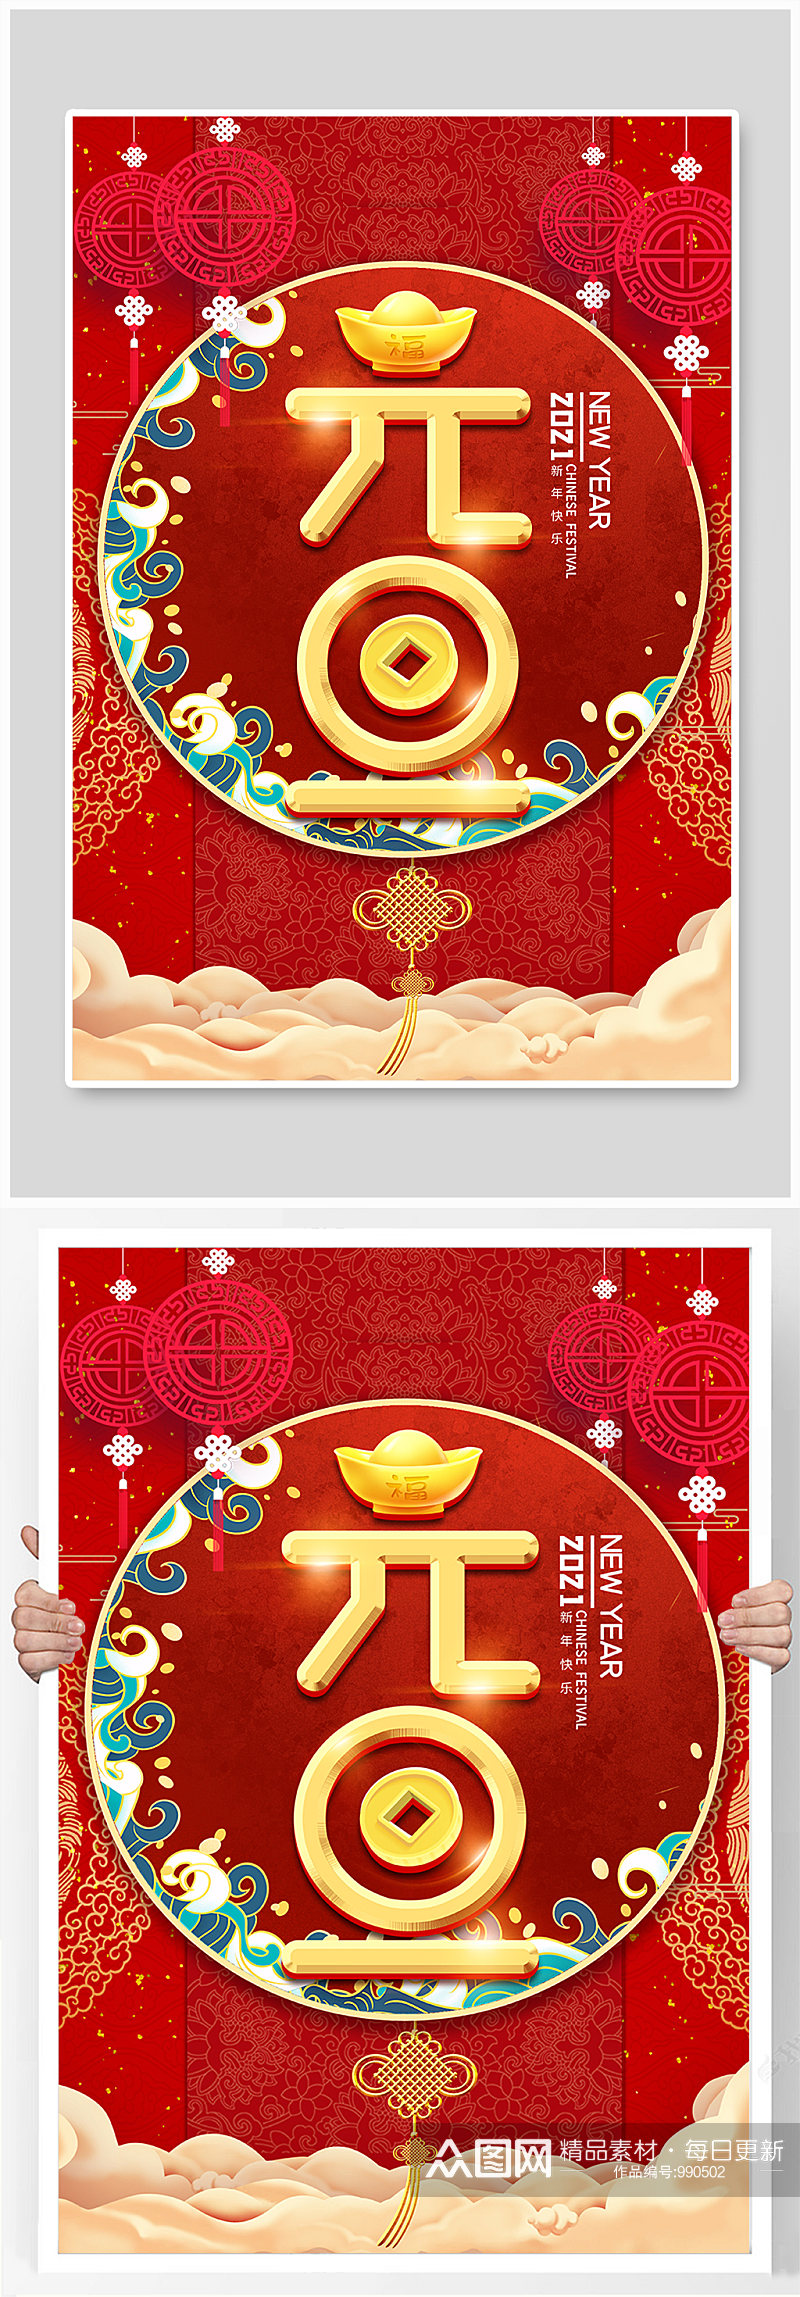 新年元旦节日主题大红色创意立体剪纸海报素材